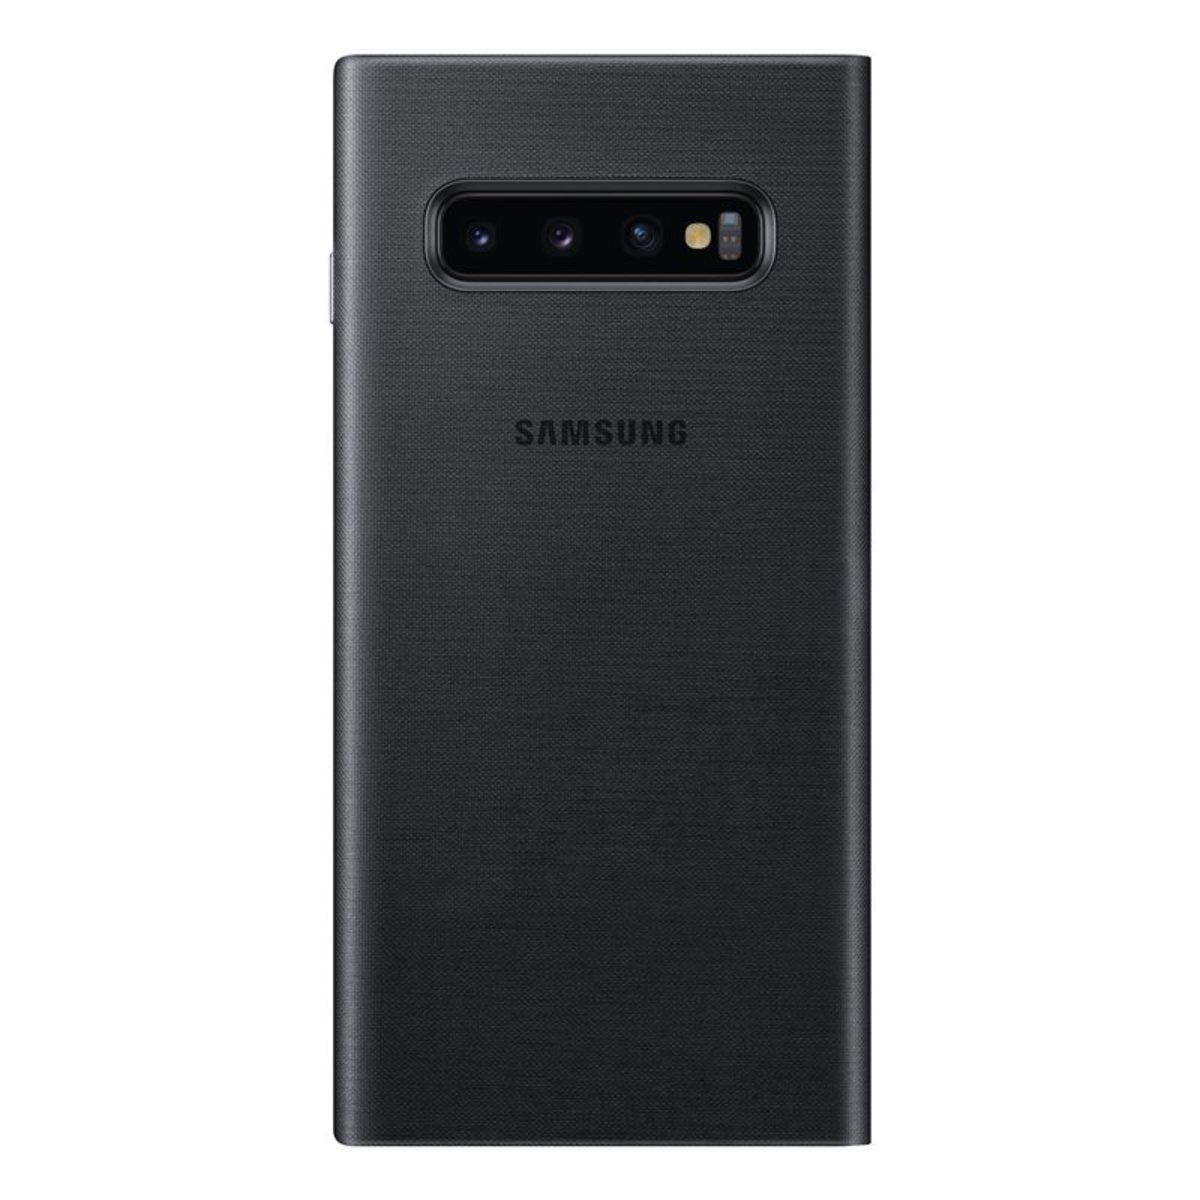 Samsung Galaxy S10 LED view cover Black NG973PB